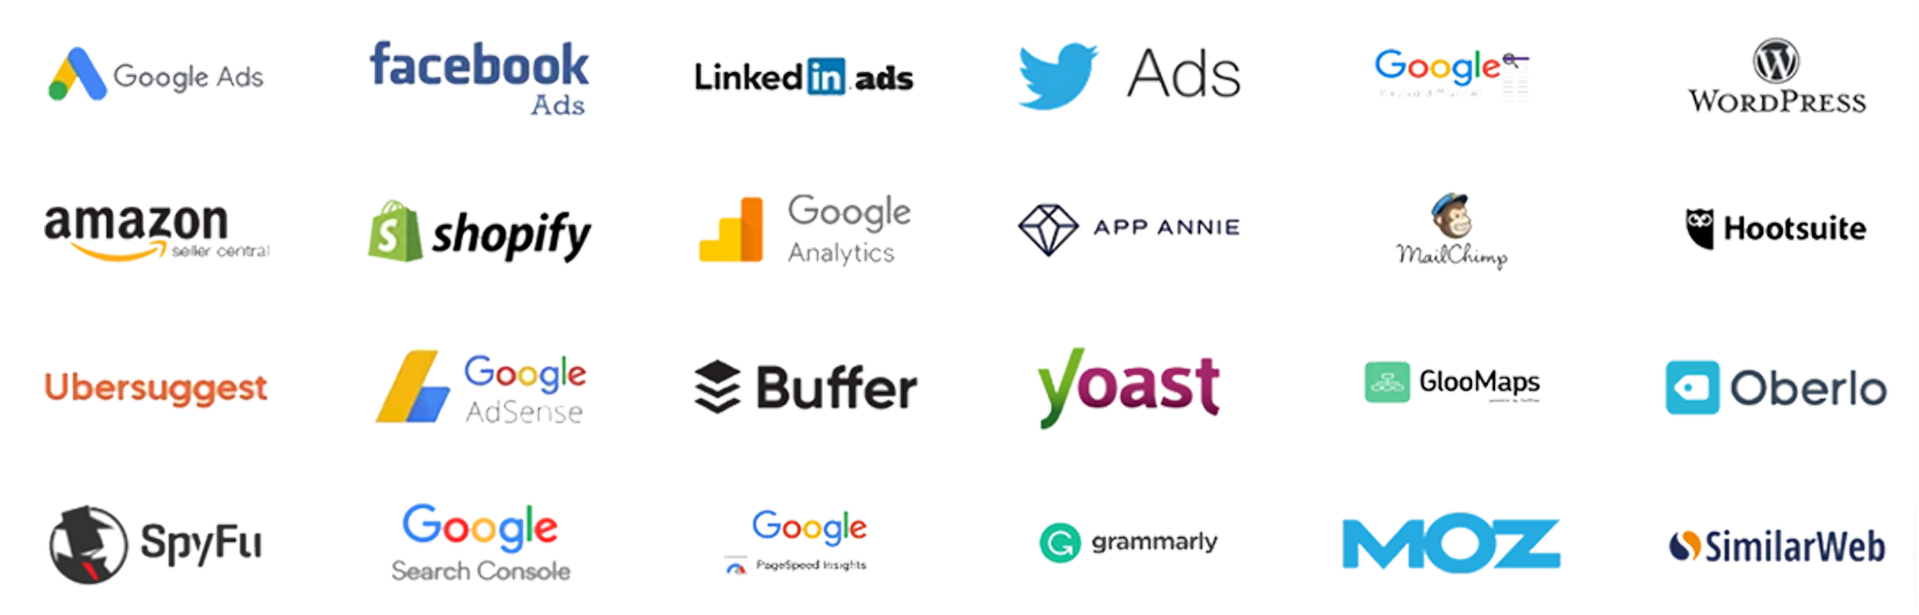 tools logos